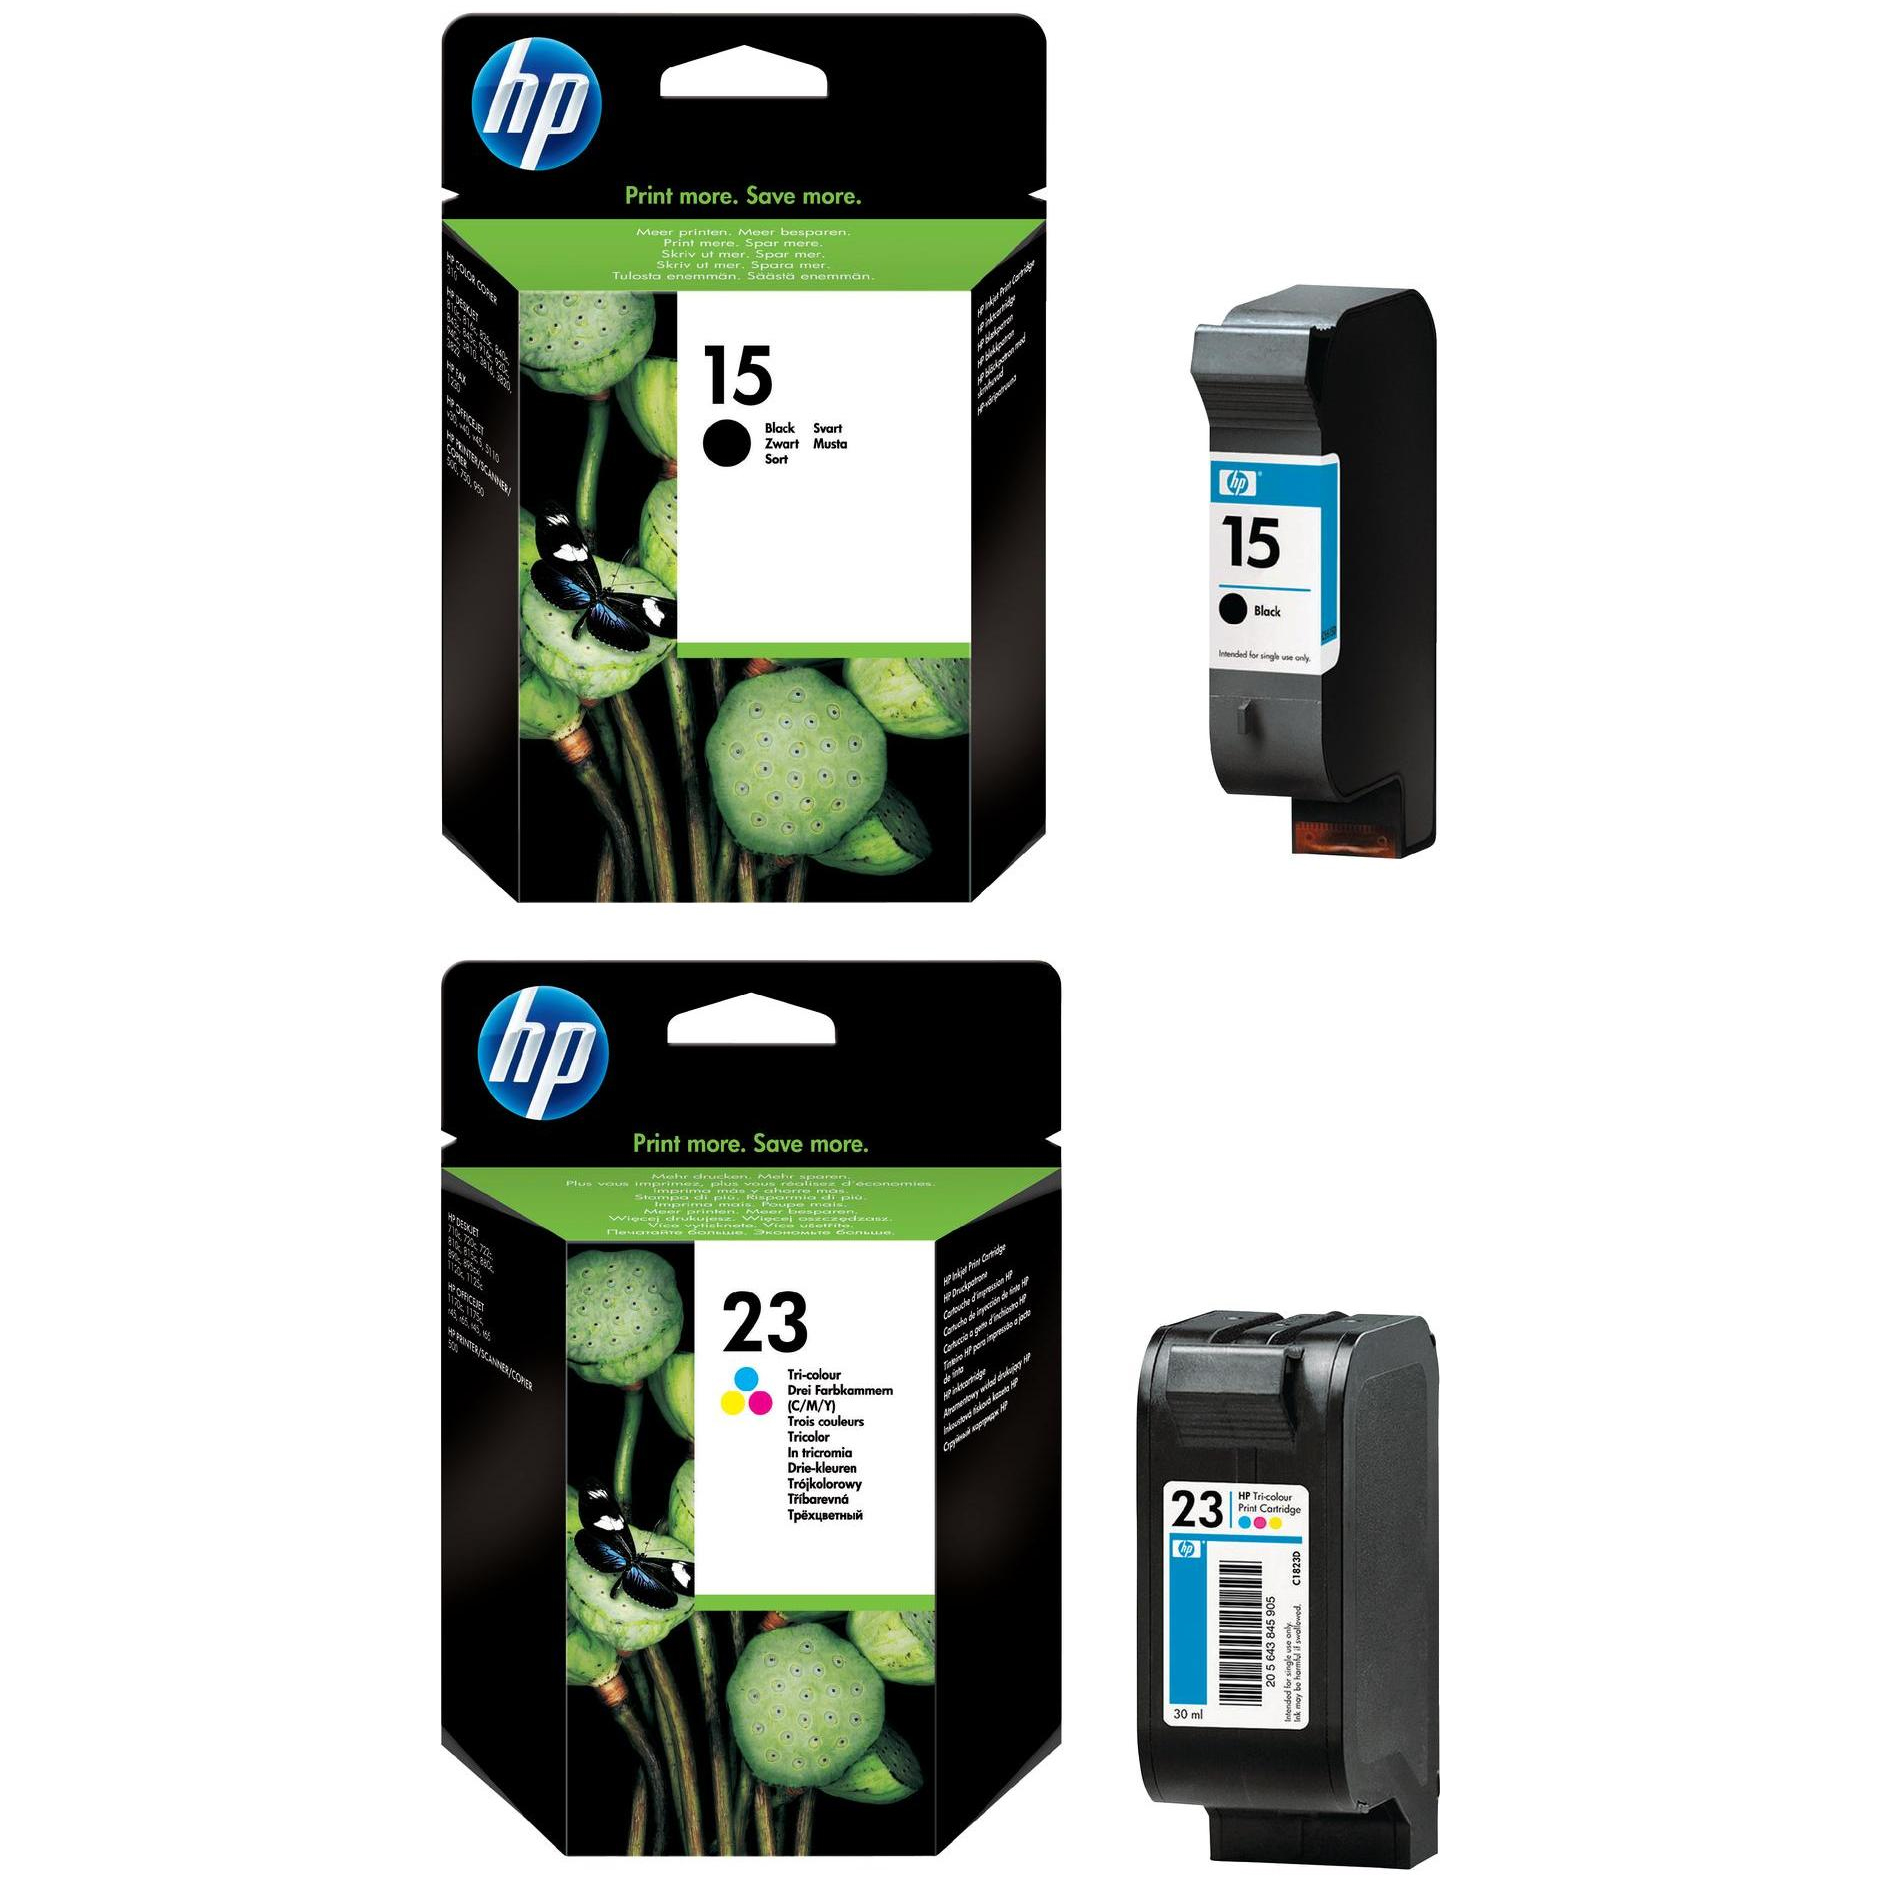 Original HP 15 / 23 Black & Colour Combo Pack Ink Cartridges (C6615DE & C1823DE)